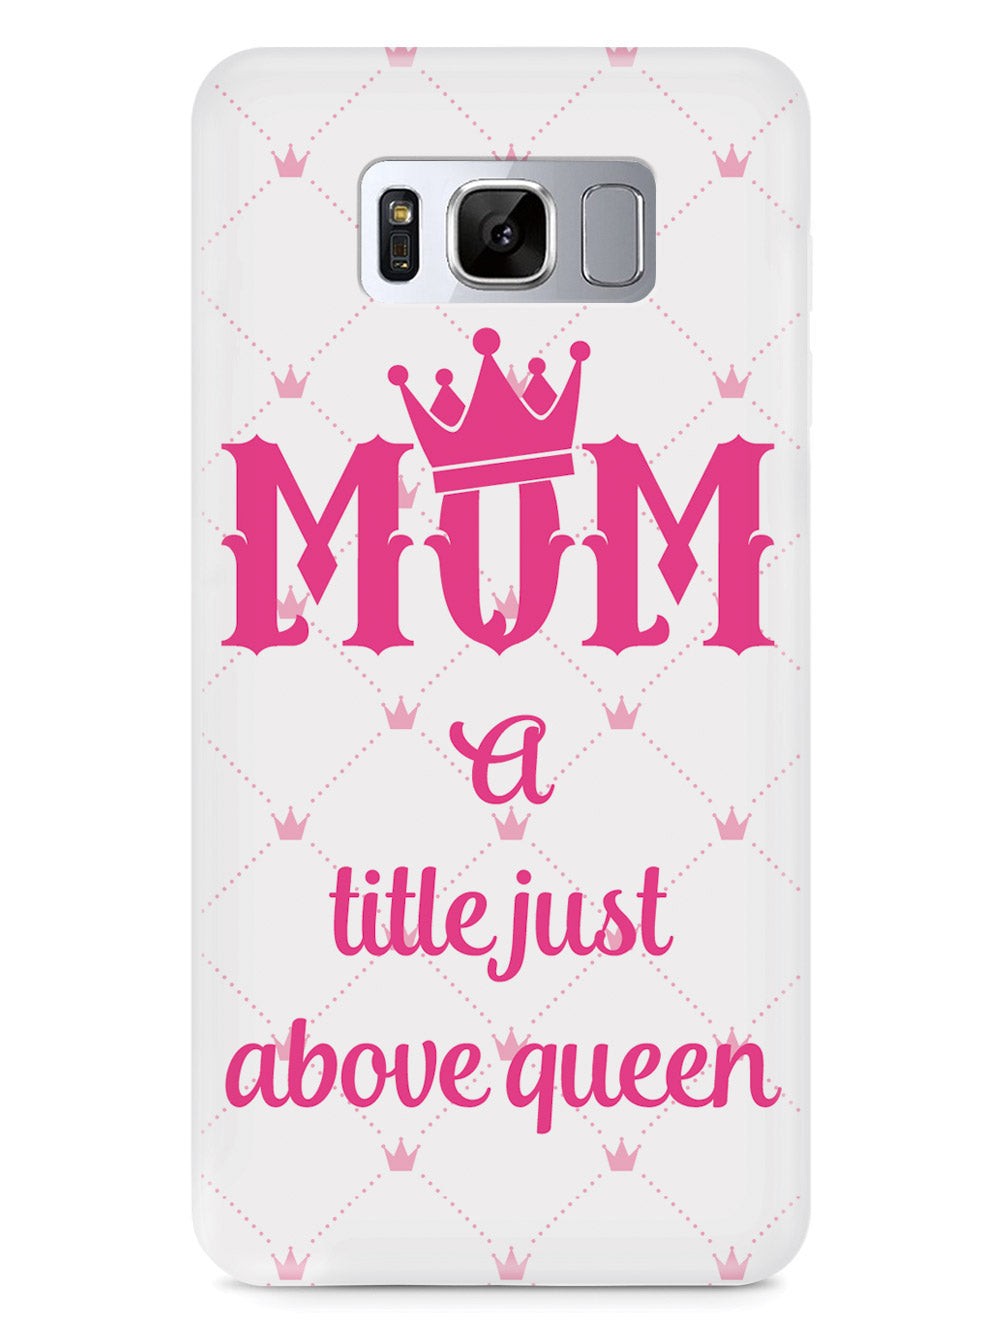 Queen Mom Case